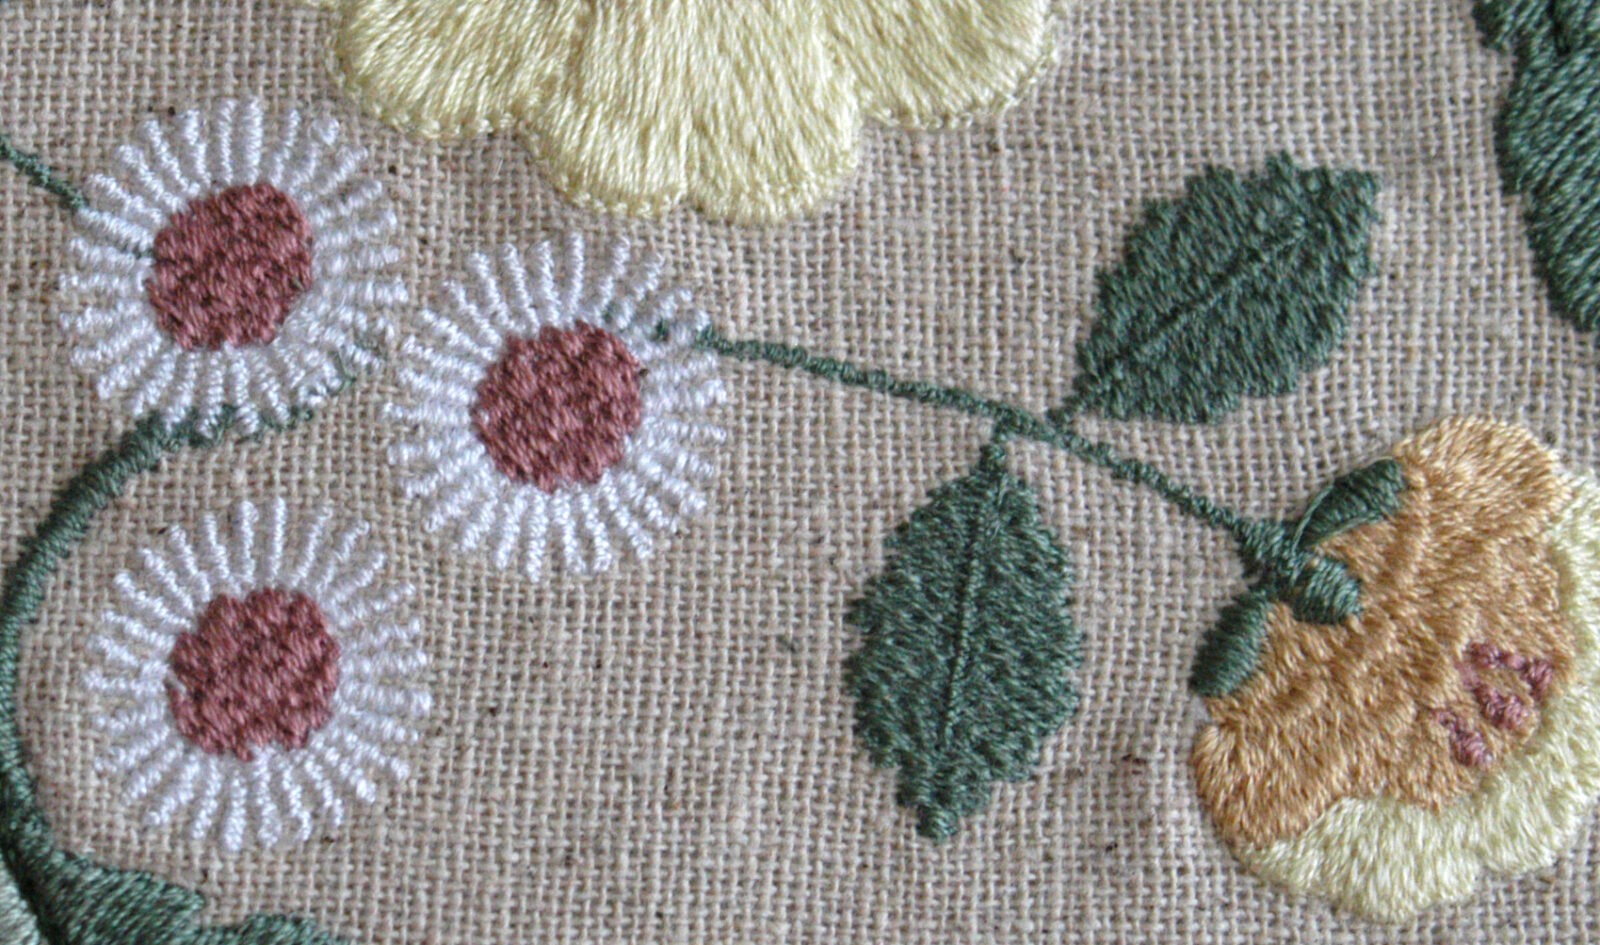 Filament White Cotton embroidery bobbin thread, For Textile